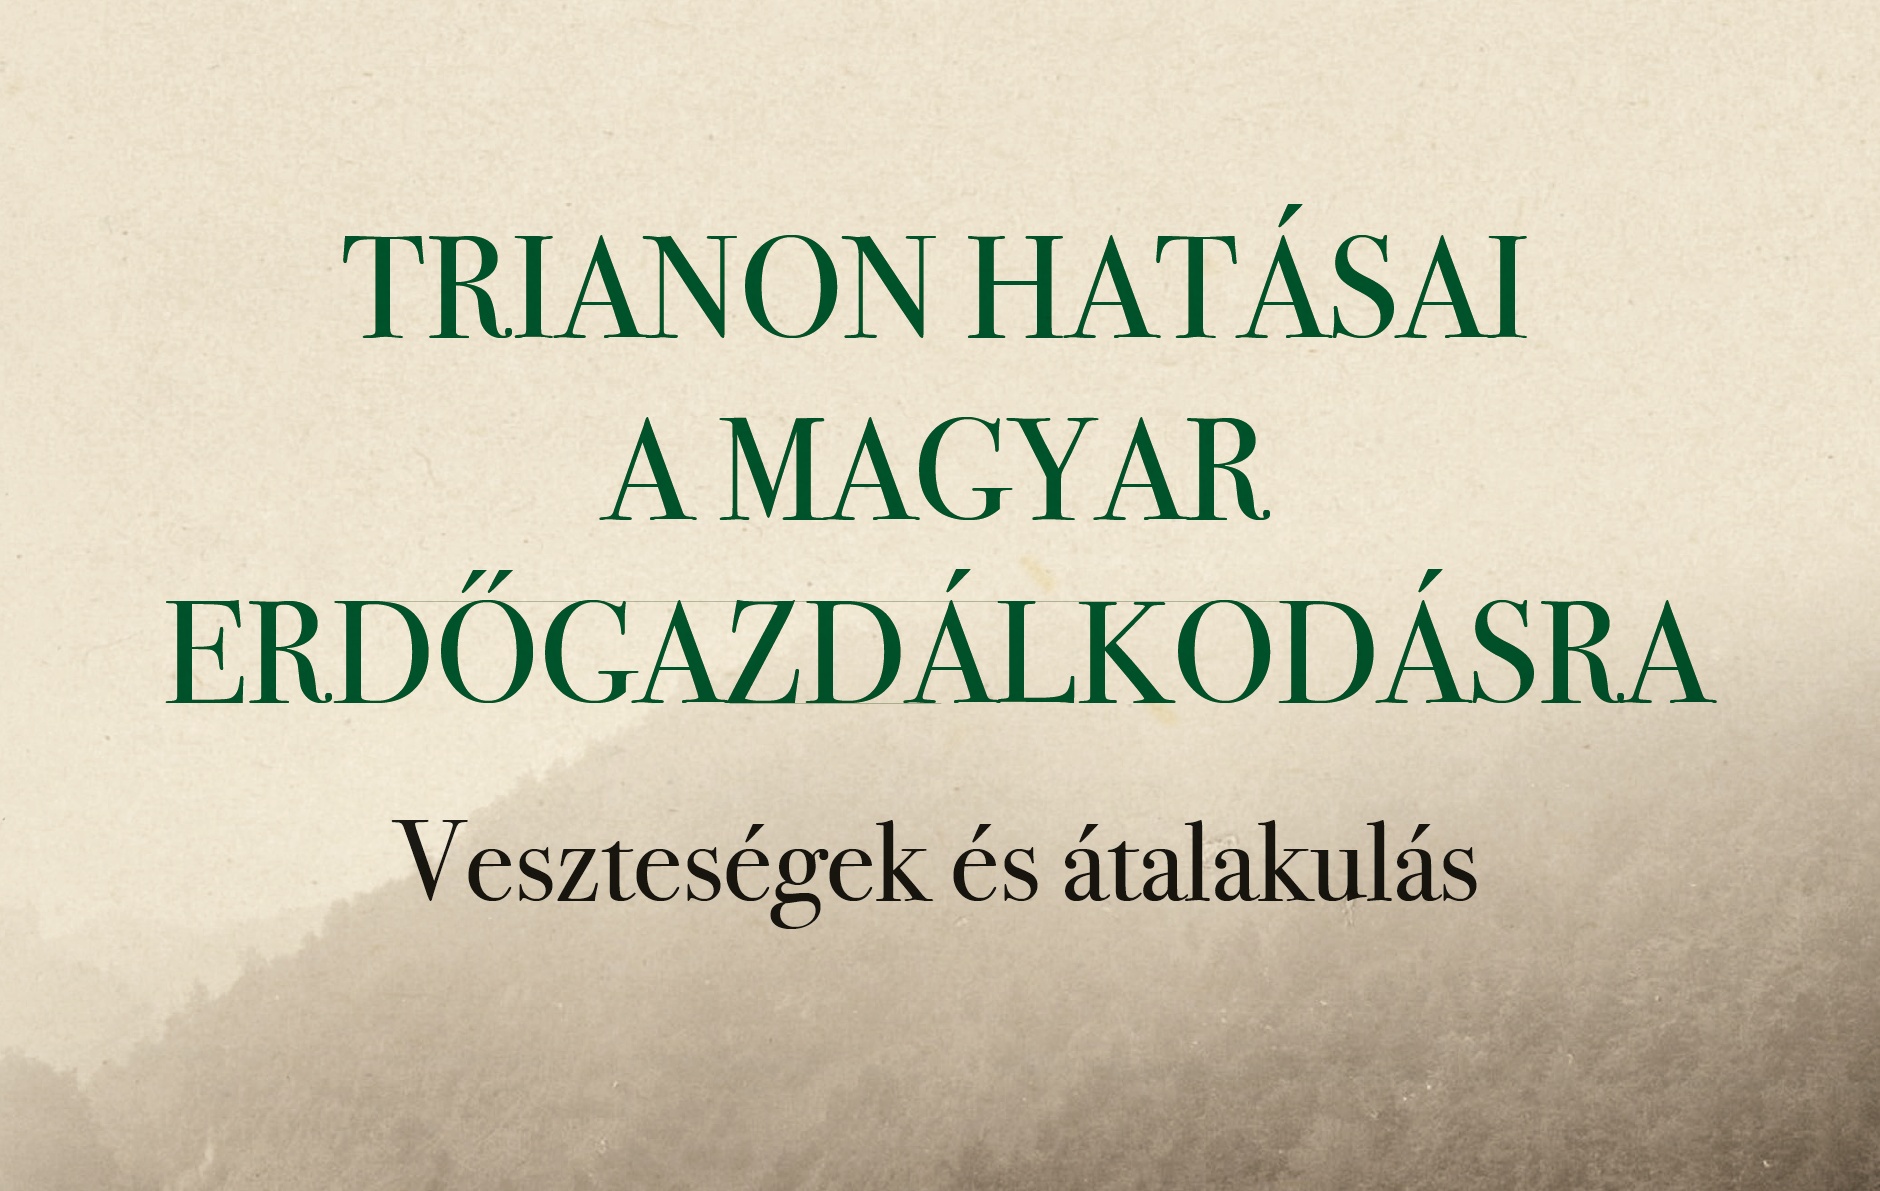 Trianon magyar erdőgazdaságra gyakorolt hatásáról készült kiadvány